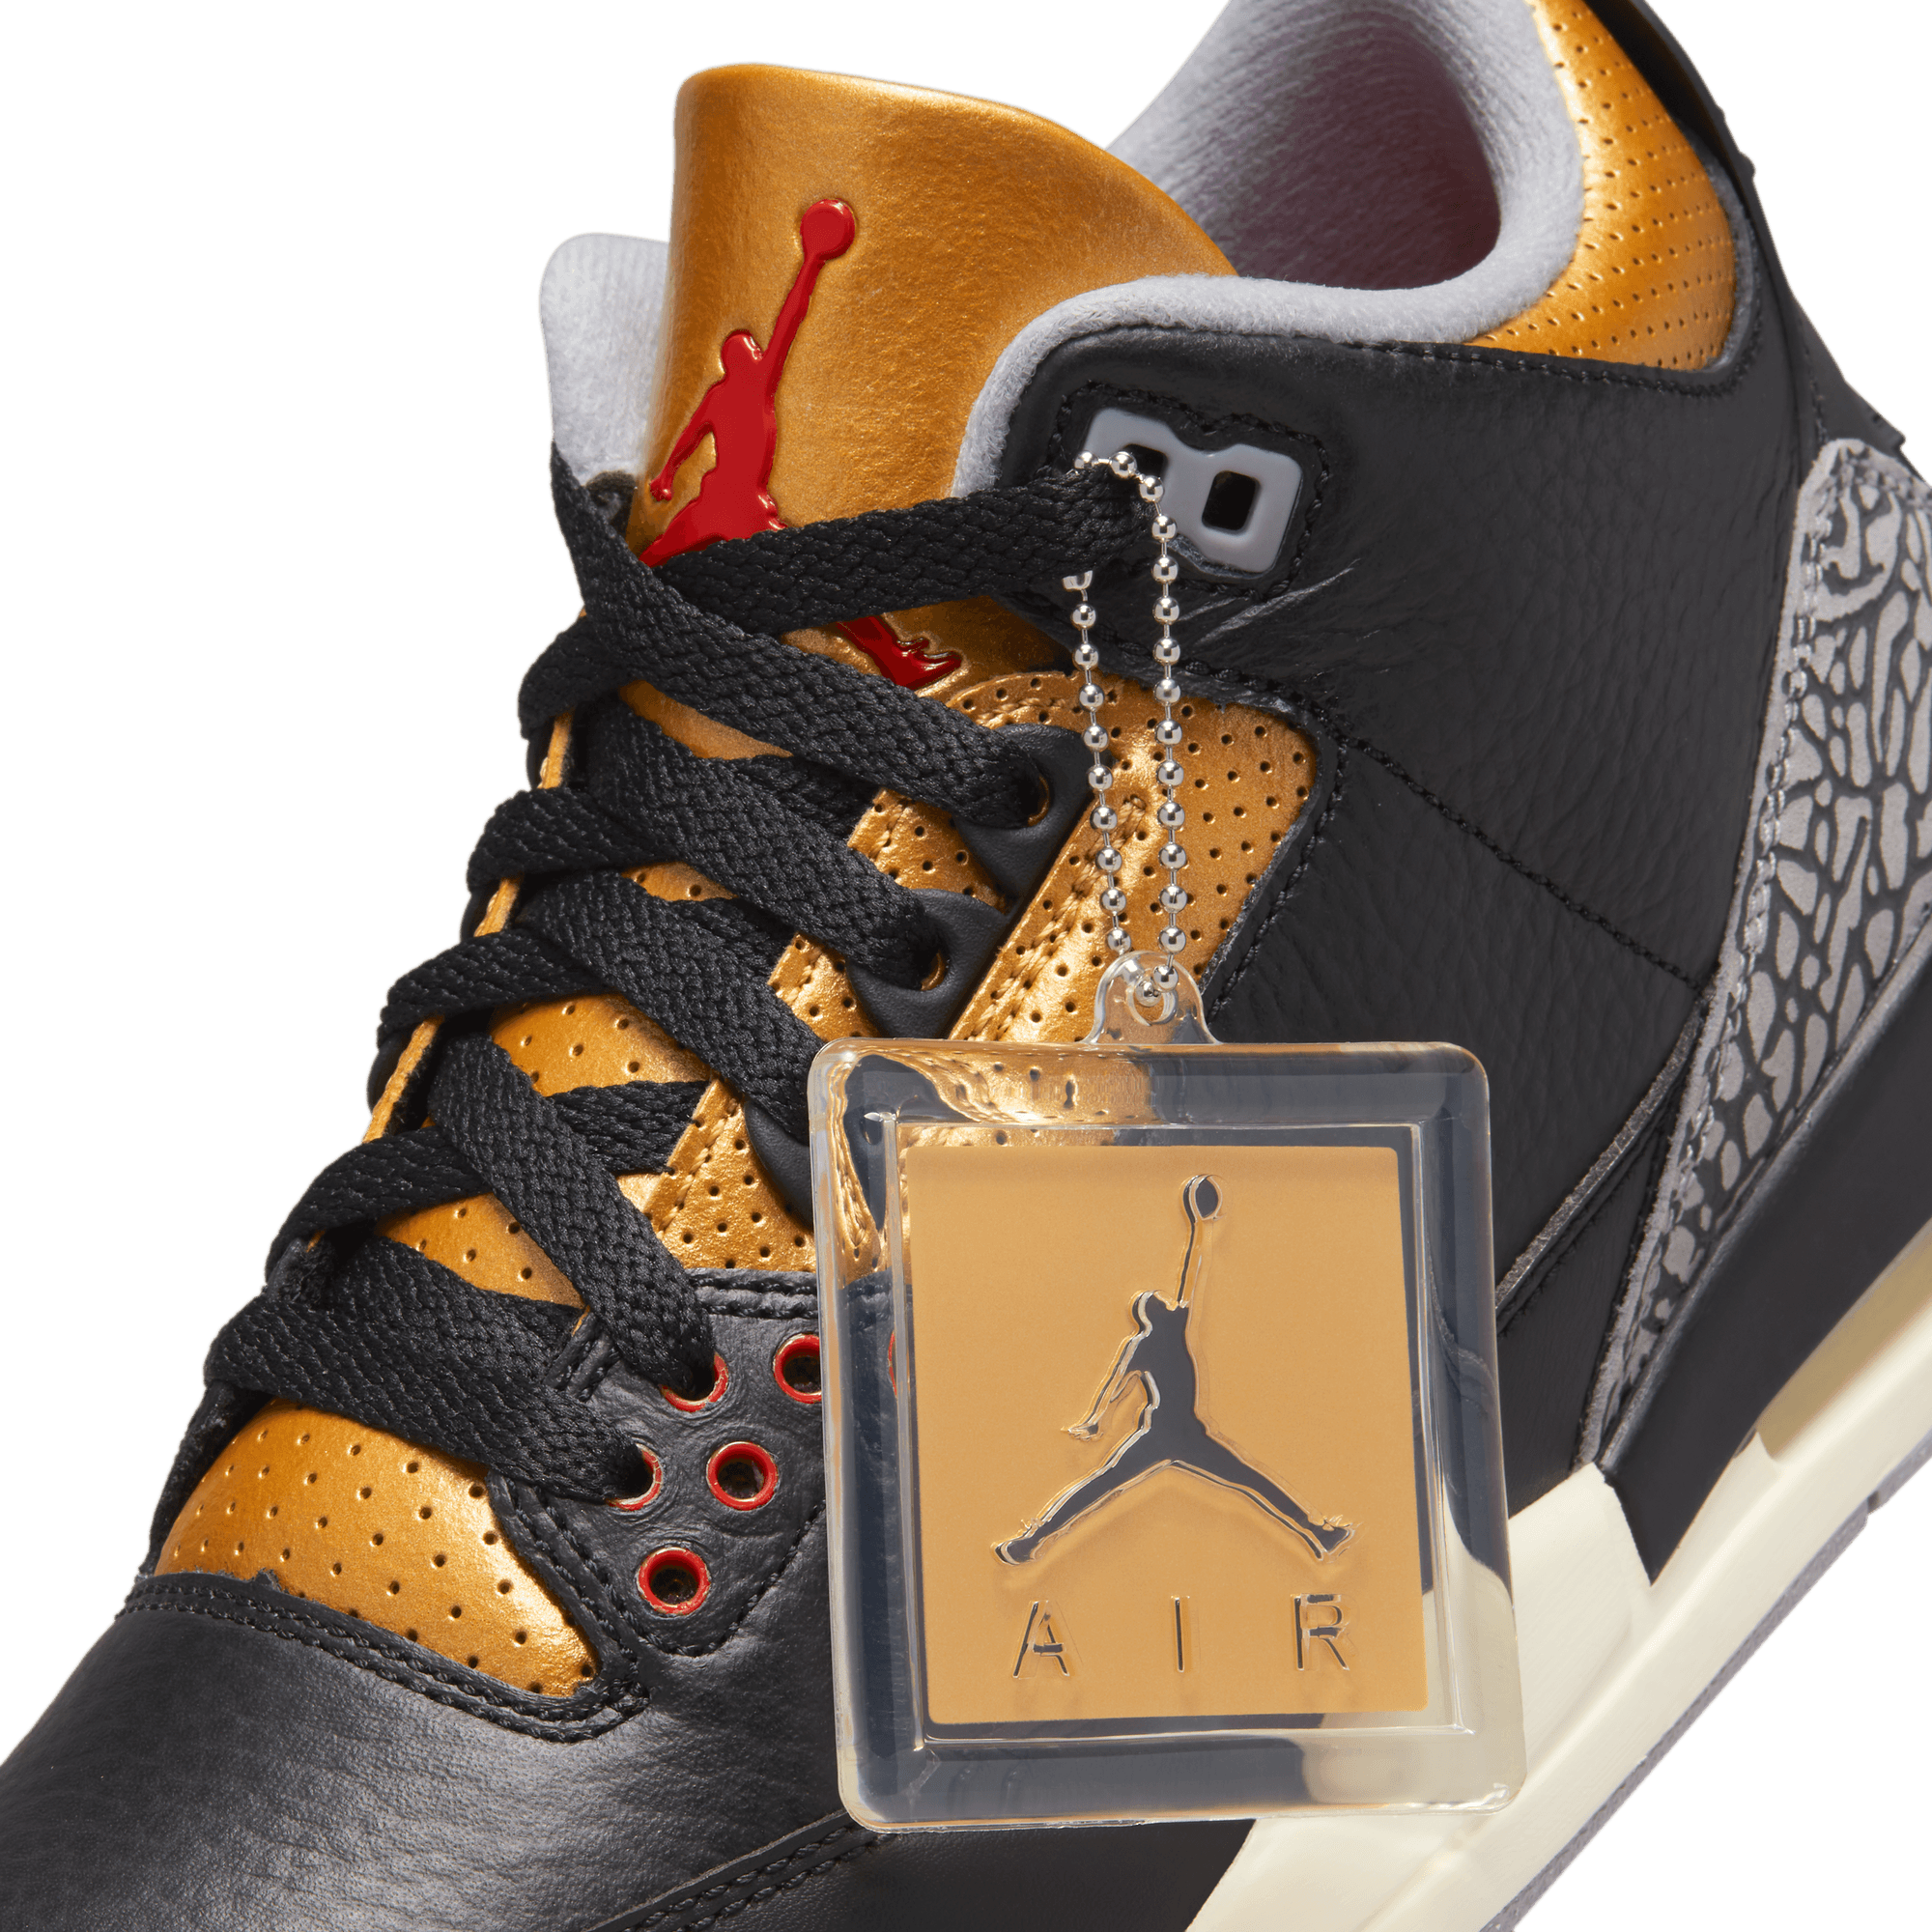 WMNS Nike Air Jordan 3 Retro